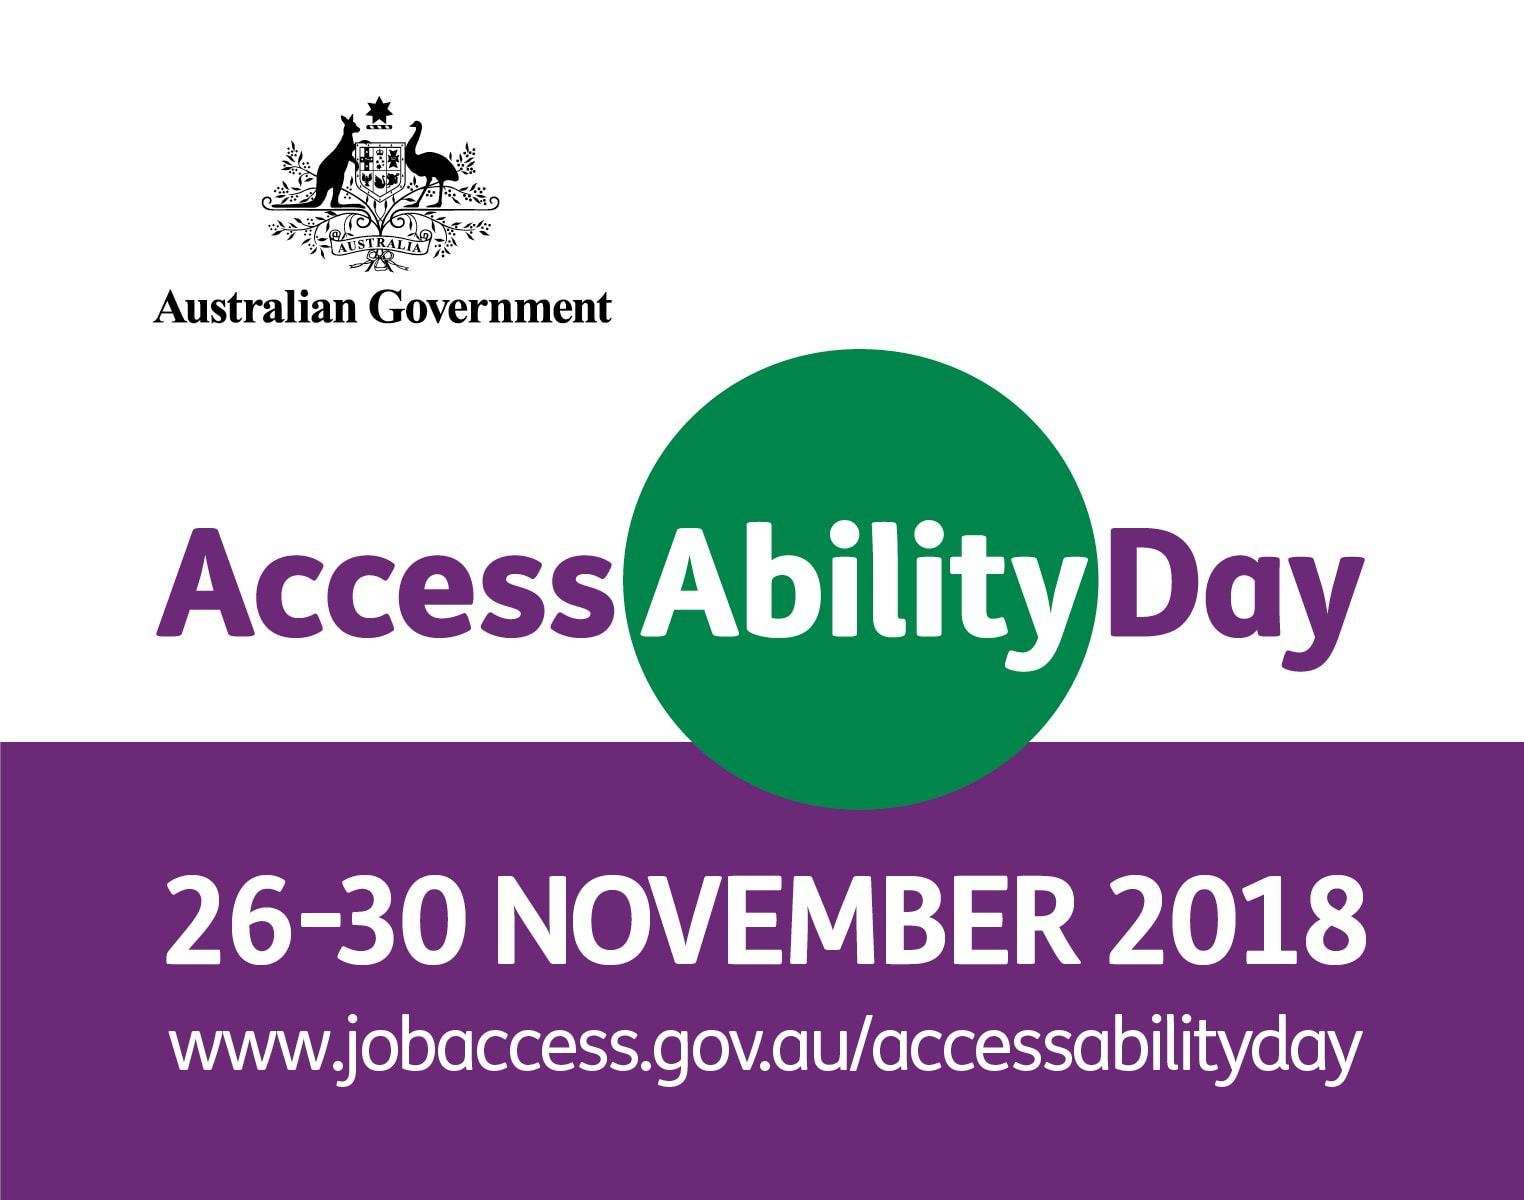 atWork Australia participates in AccessAbility Day 2018